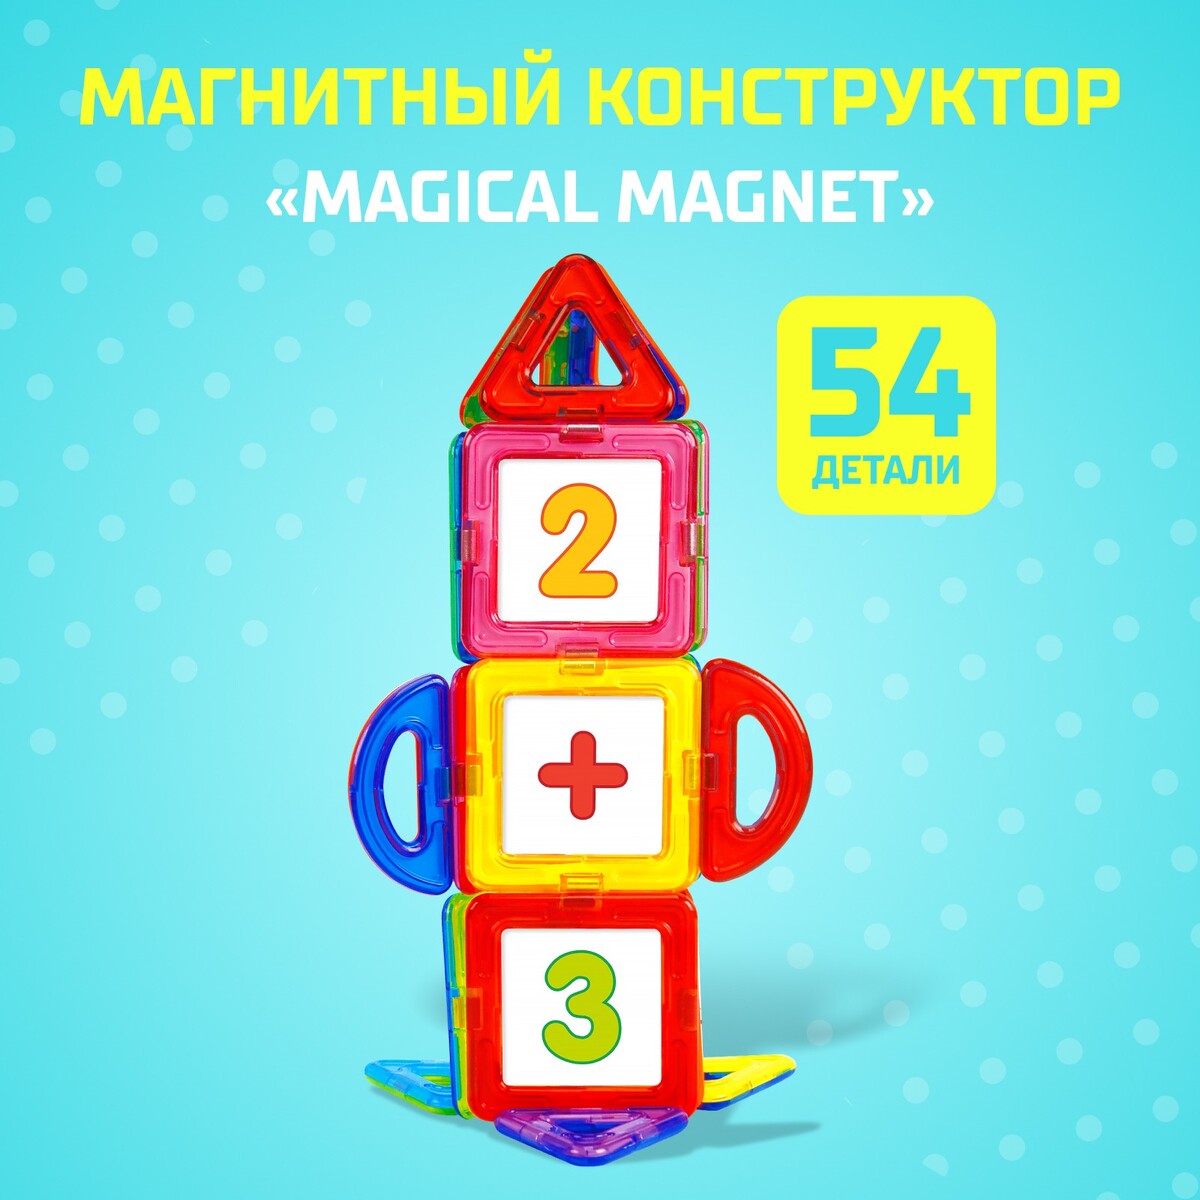 Магнитный конструктор magical magnet, 54 детали, детали матовые эксцентрики для смесителя zein латунь матовые отражатели с прокладками набор 2 шт